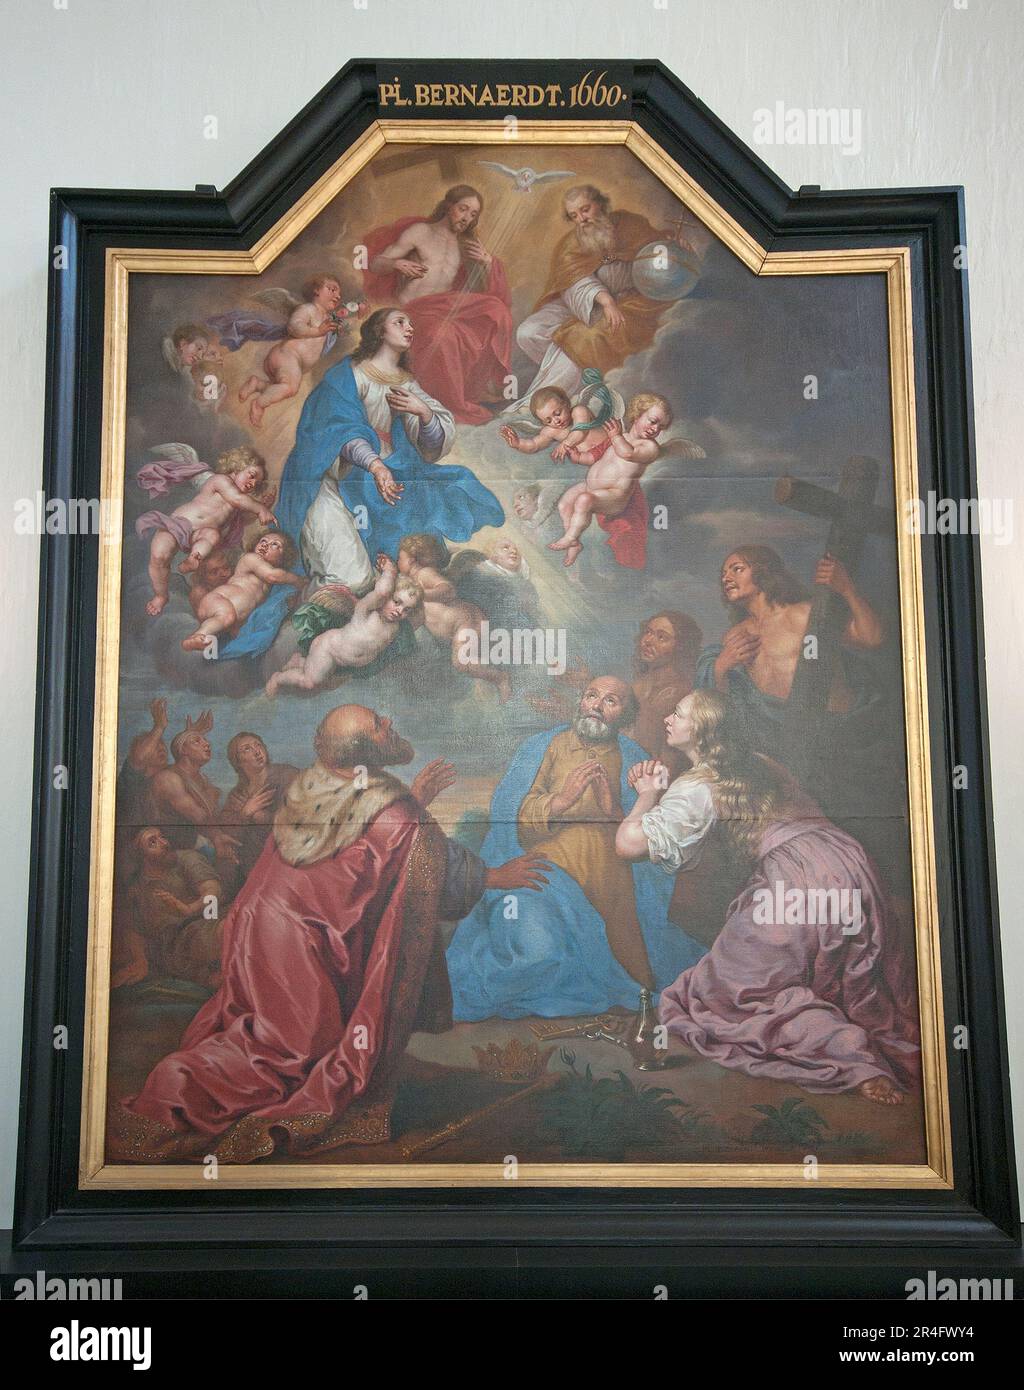 Peinture intercession de Marie (par le peintre Philippe Bernaerdt, 1660) dans l'église notre-Dame (onze-Lieve-Vrouwekerk), Bruges, Flandre, Belgique Banque D'Images